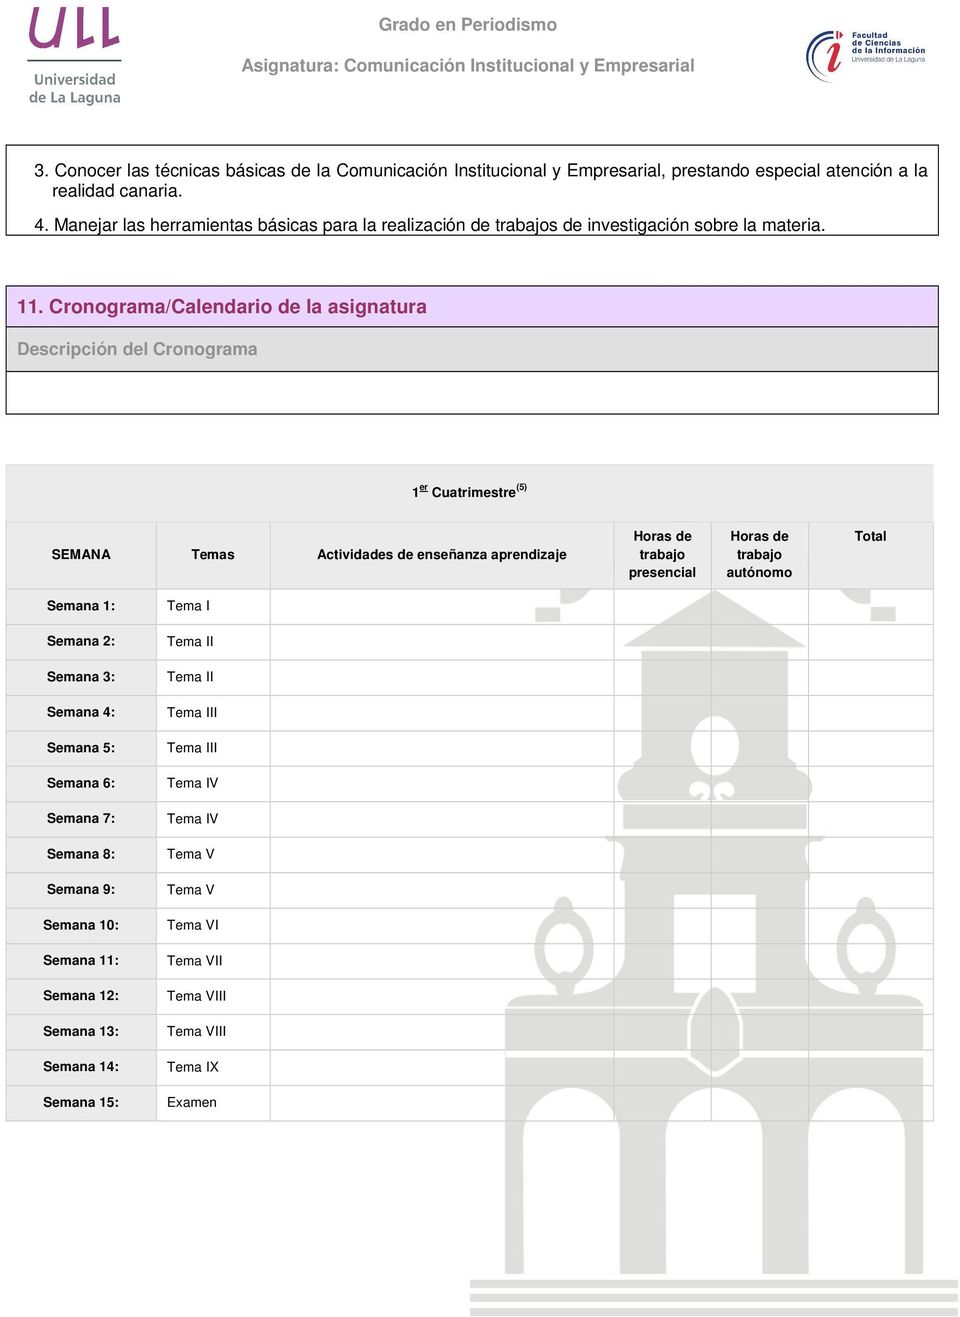 Cronograma/Calendario de la asignatura Descripción del Cronograma 1 er Cuatrimestre (5) SEMANA Temas Actividades de enseñanza aprendizaje Horas de trabajo presencial Horas de